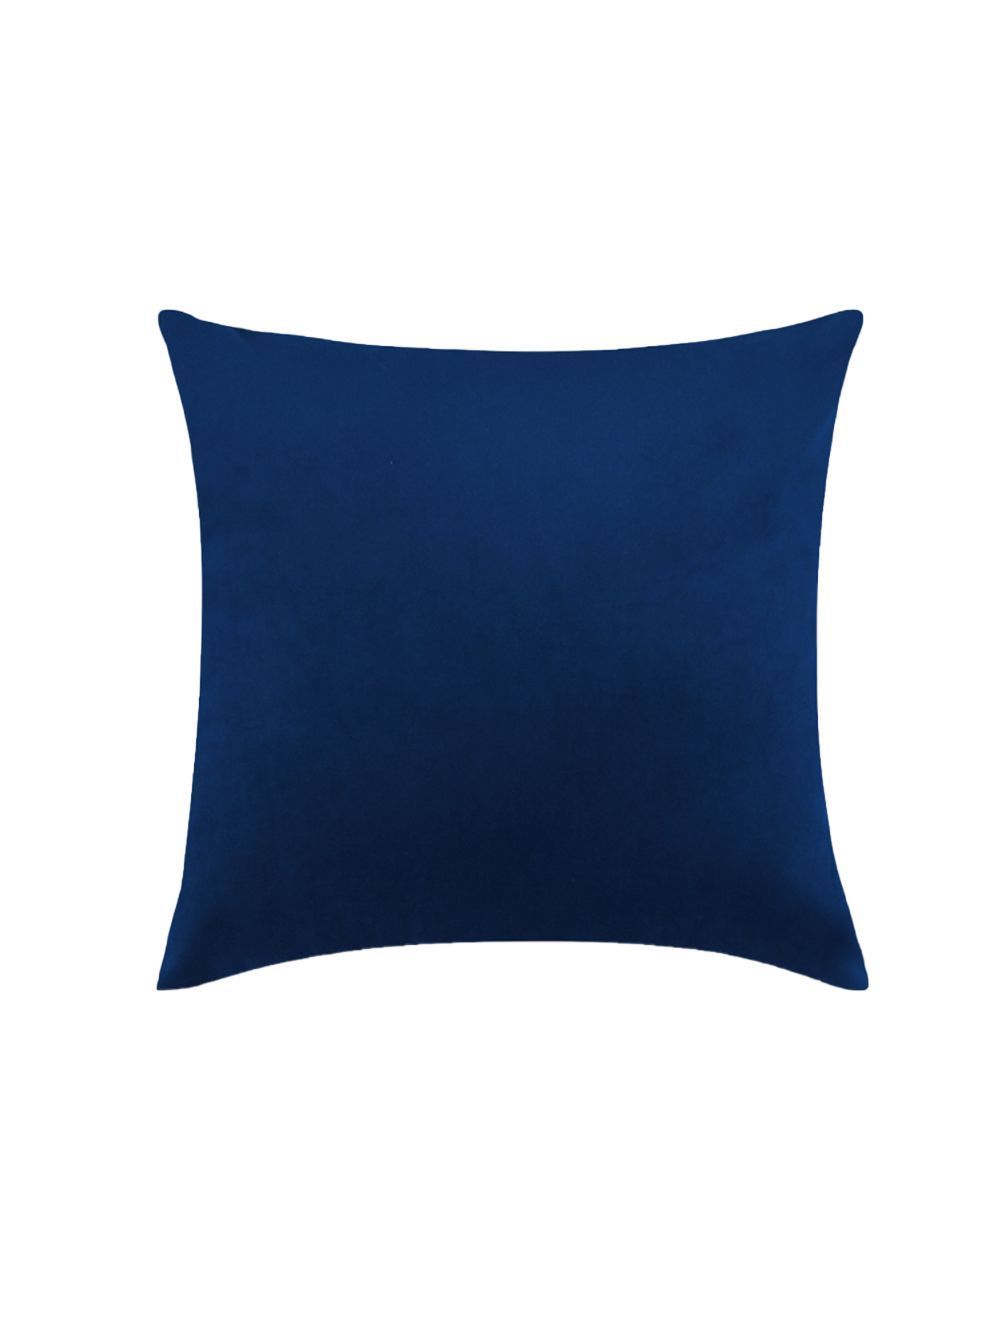 Rishahome Blue Coloured Printed Cushion Cover 45x45 cm-9C133CY002